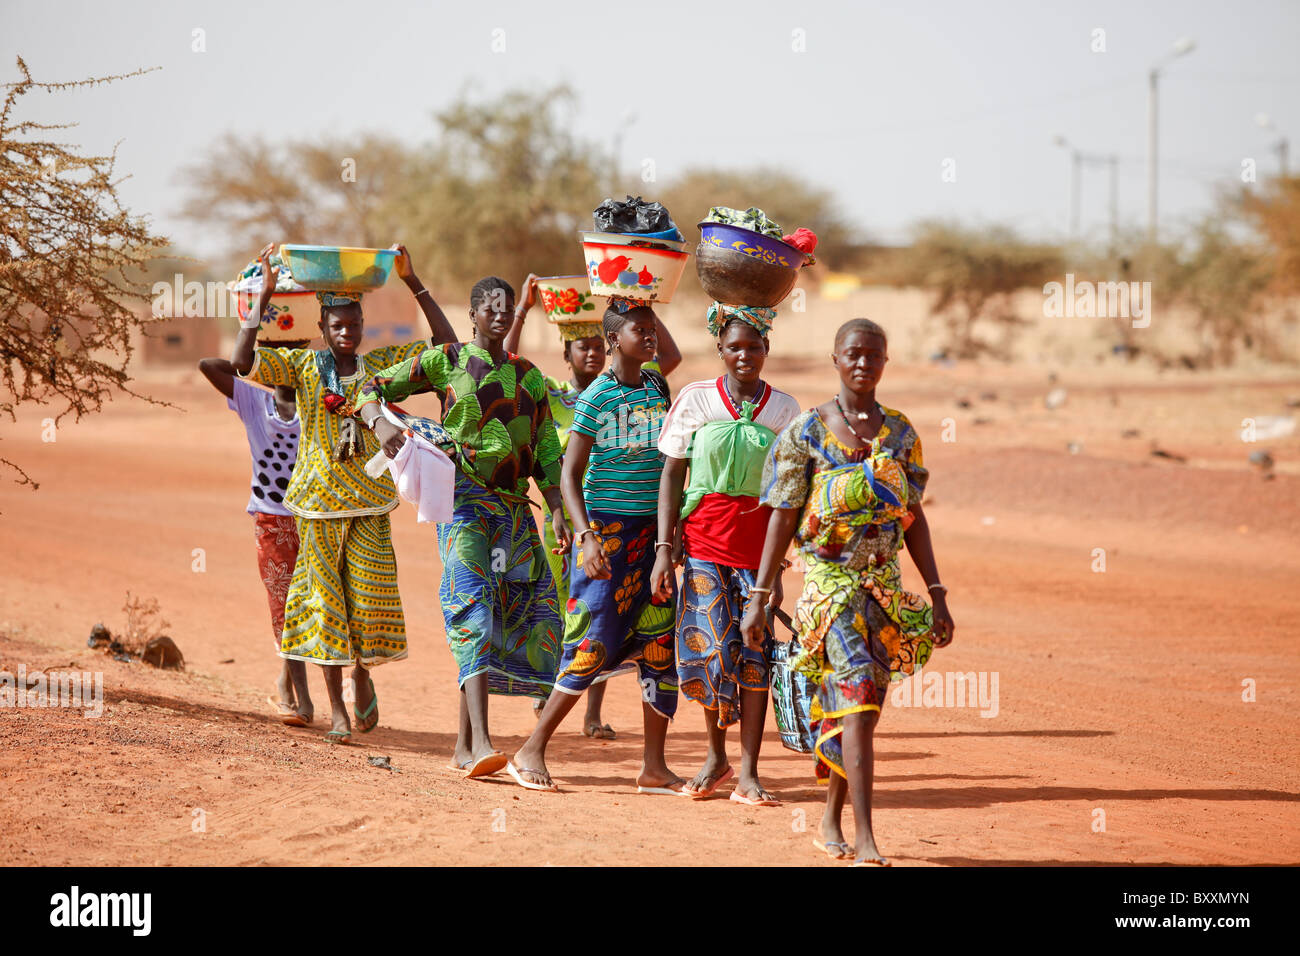 Frauen kommen in die Stadt Djibo, Burkina Faso, zu Fuß, ihre waren auf ihren Köpfen in traditionelle afrikanische Mode tragen. Stockfoto